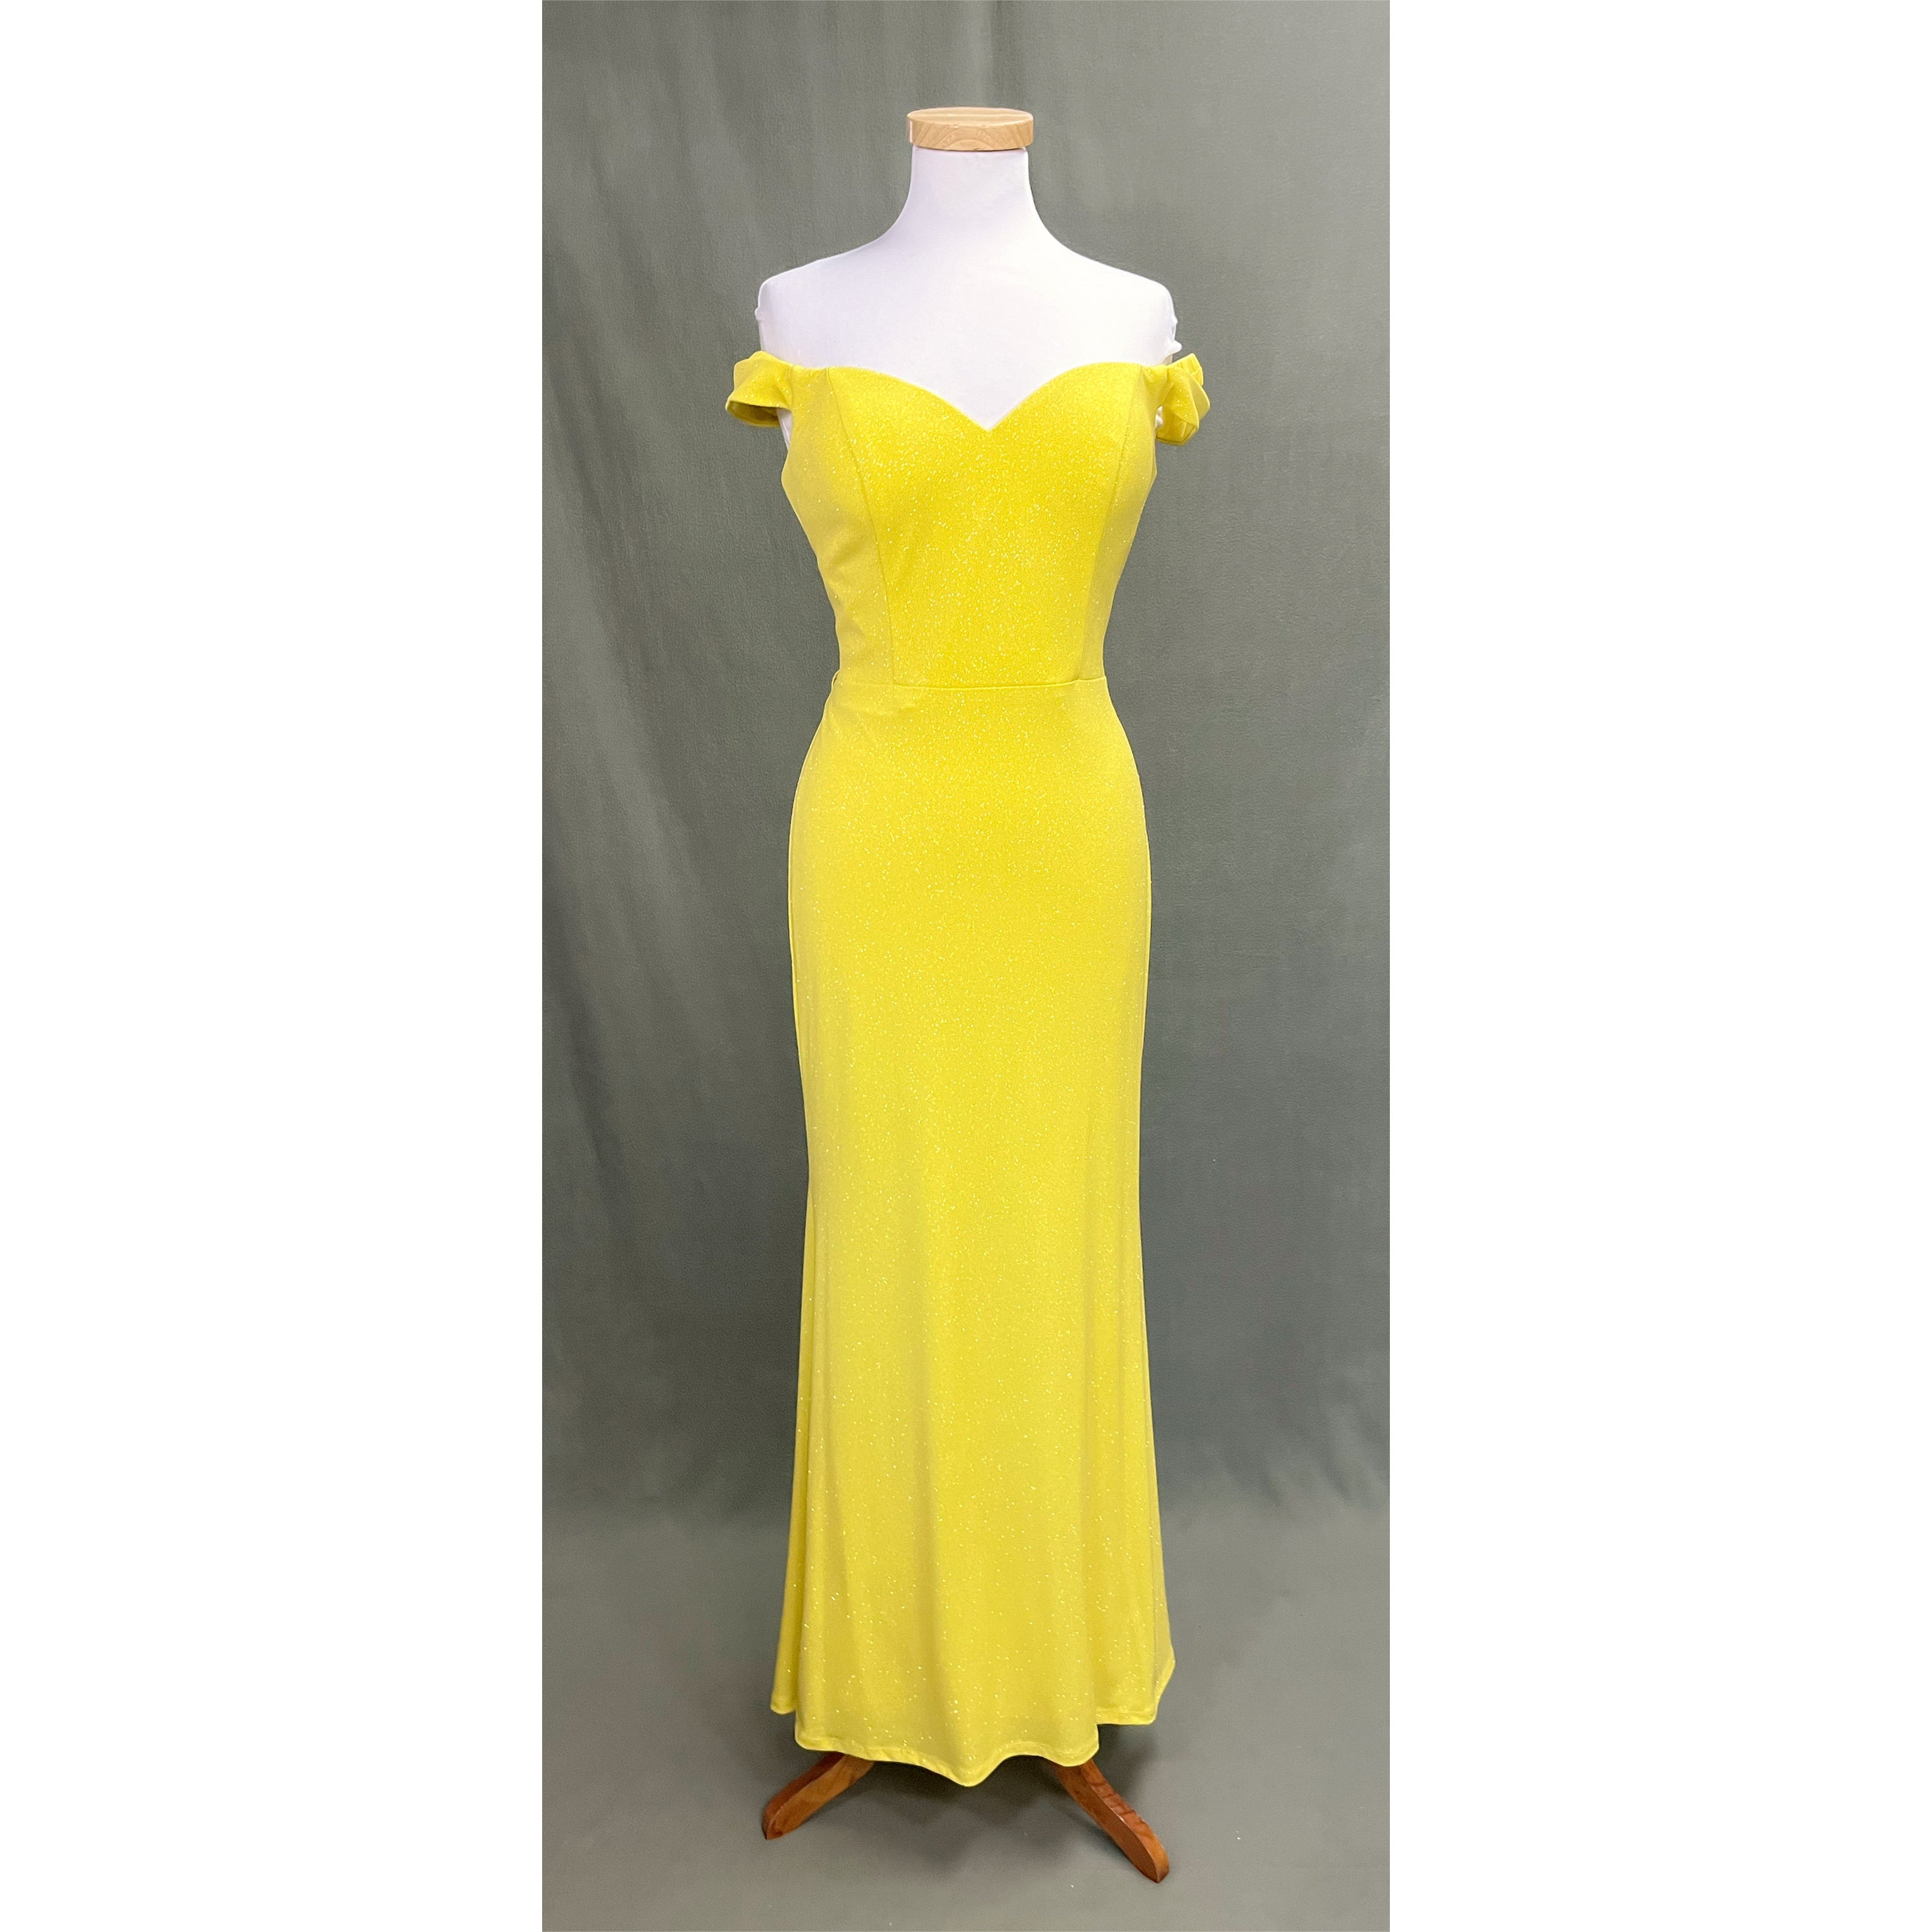 Amari yellow dress, size M